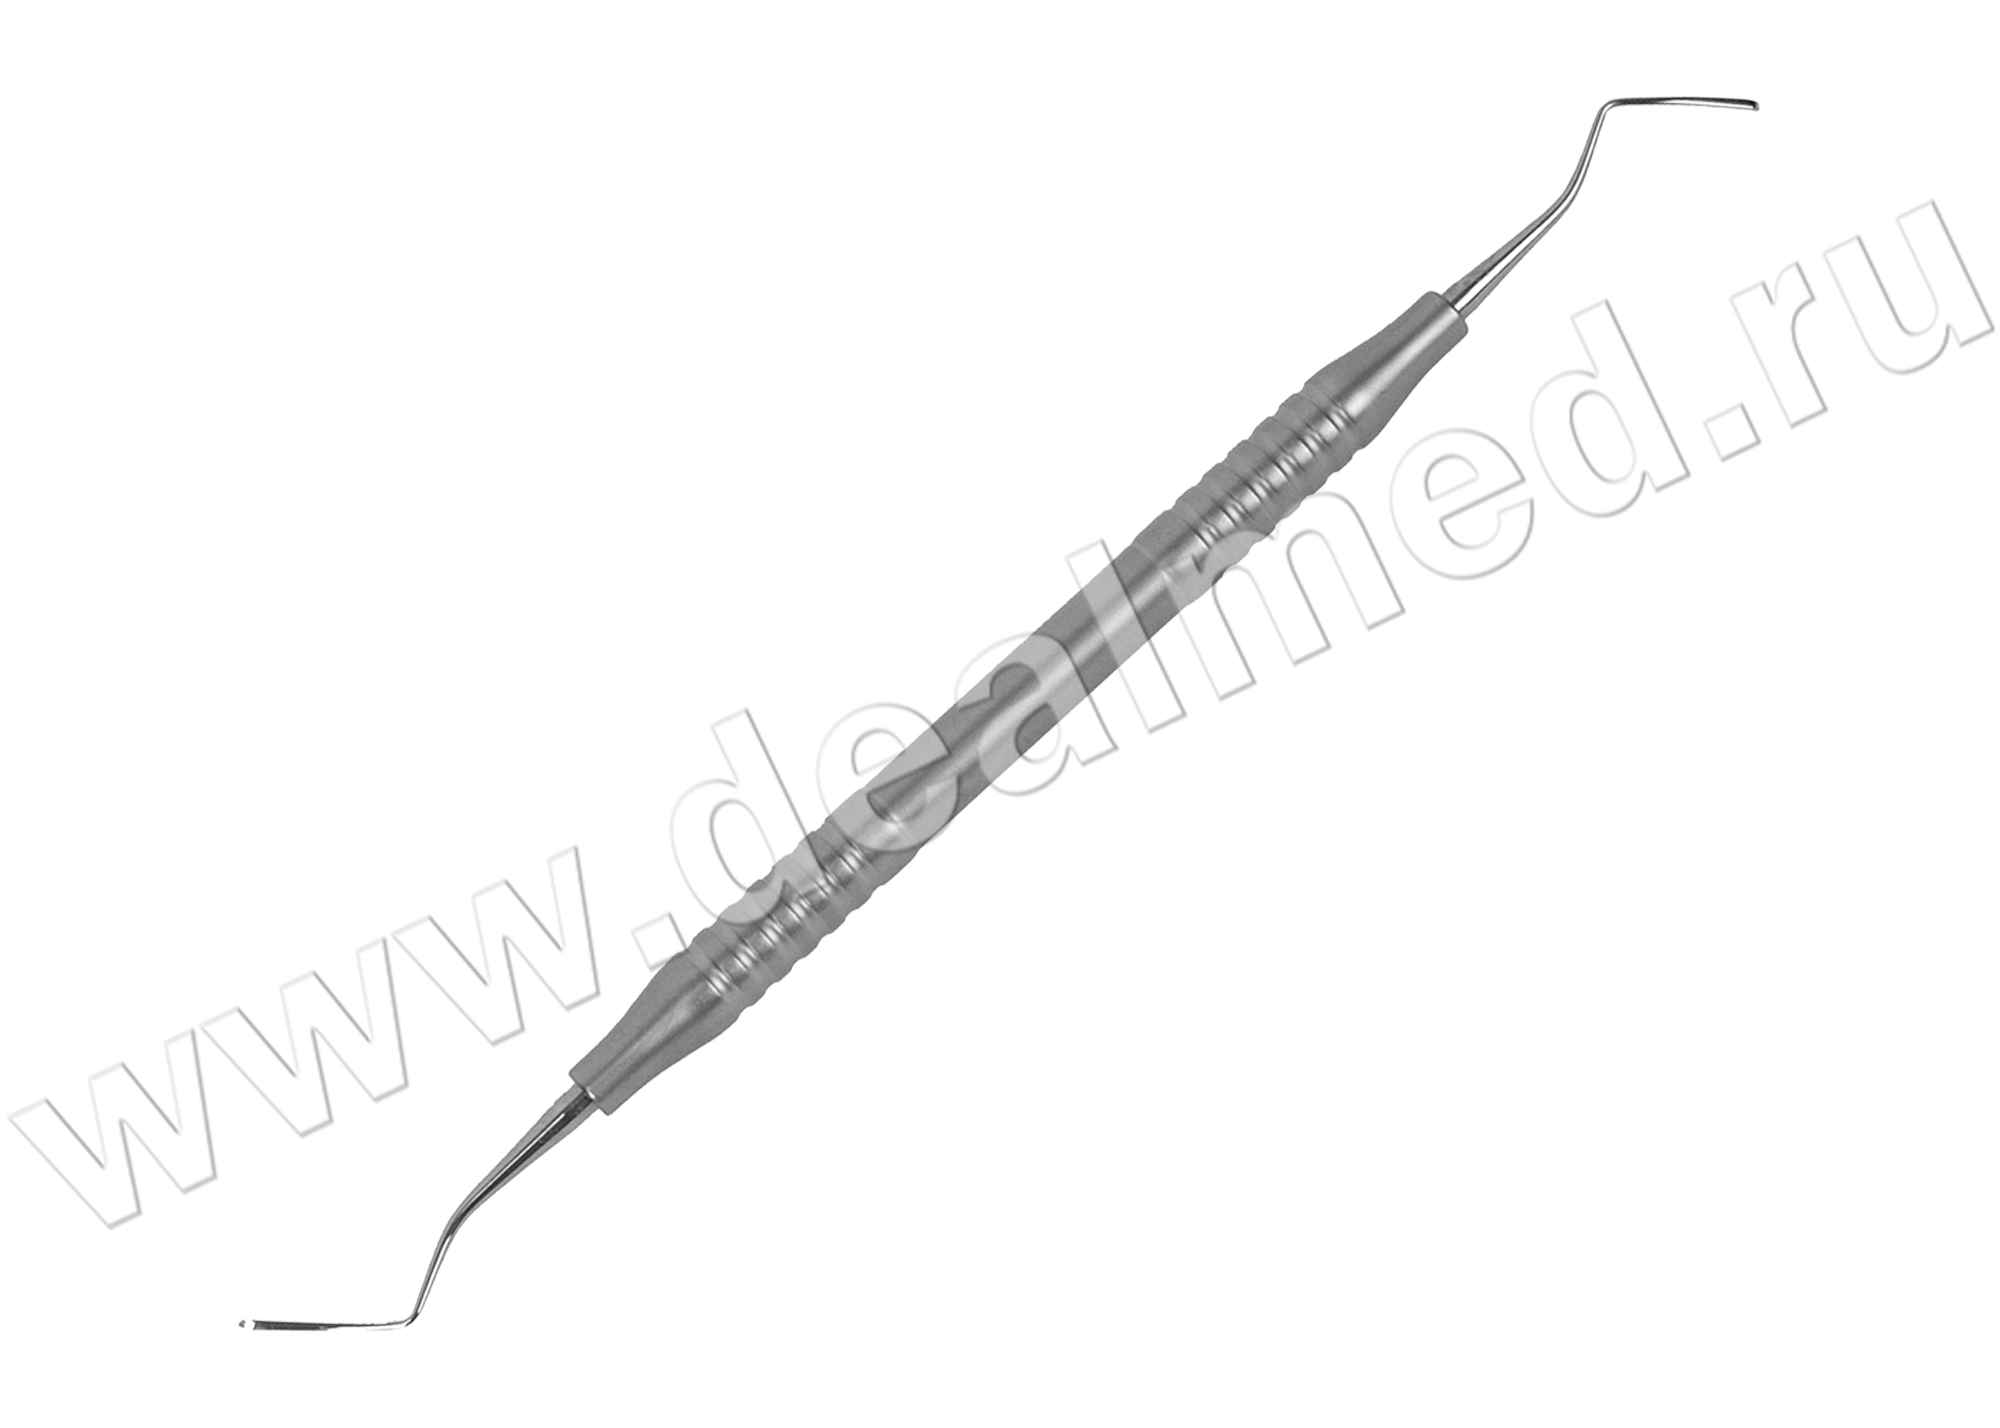 Кюрета стоматологическая, модель 1, ширина раб.части 0, 9 мм, длина 17,5 см, пустотелая ручка (арт. 43-350-01-07) KLS Martin, Германия